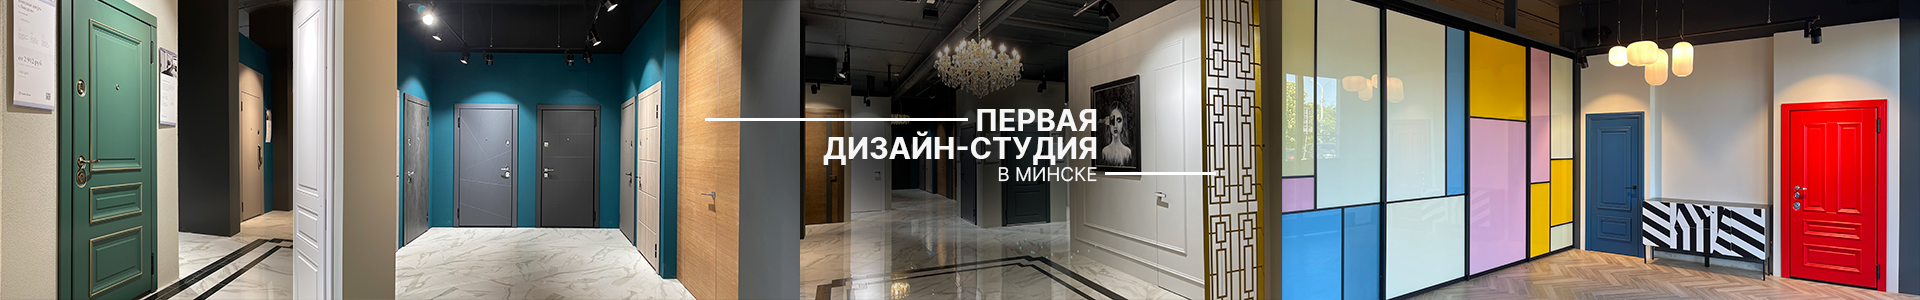 Первая дизайн-студия «Стальная линия» в Минске